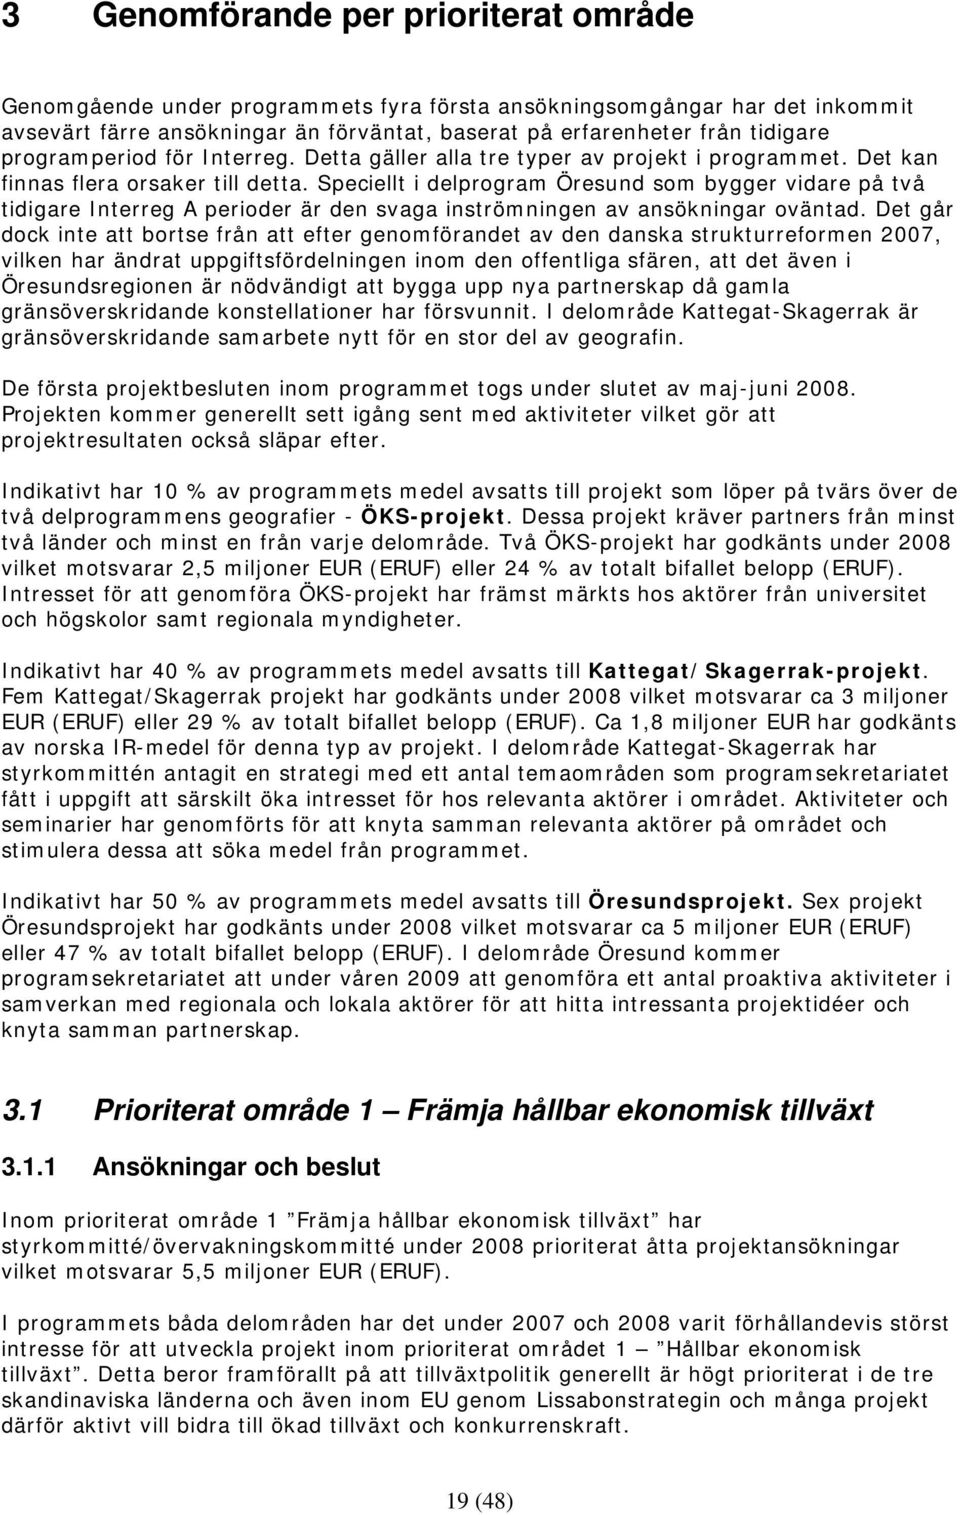 Speciellt i delprogram Öresund som bygger vidare på två tidigare Interreg A perioder är den svaga inströmningen av ansökningar oväntad.